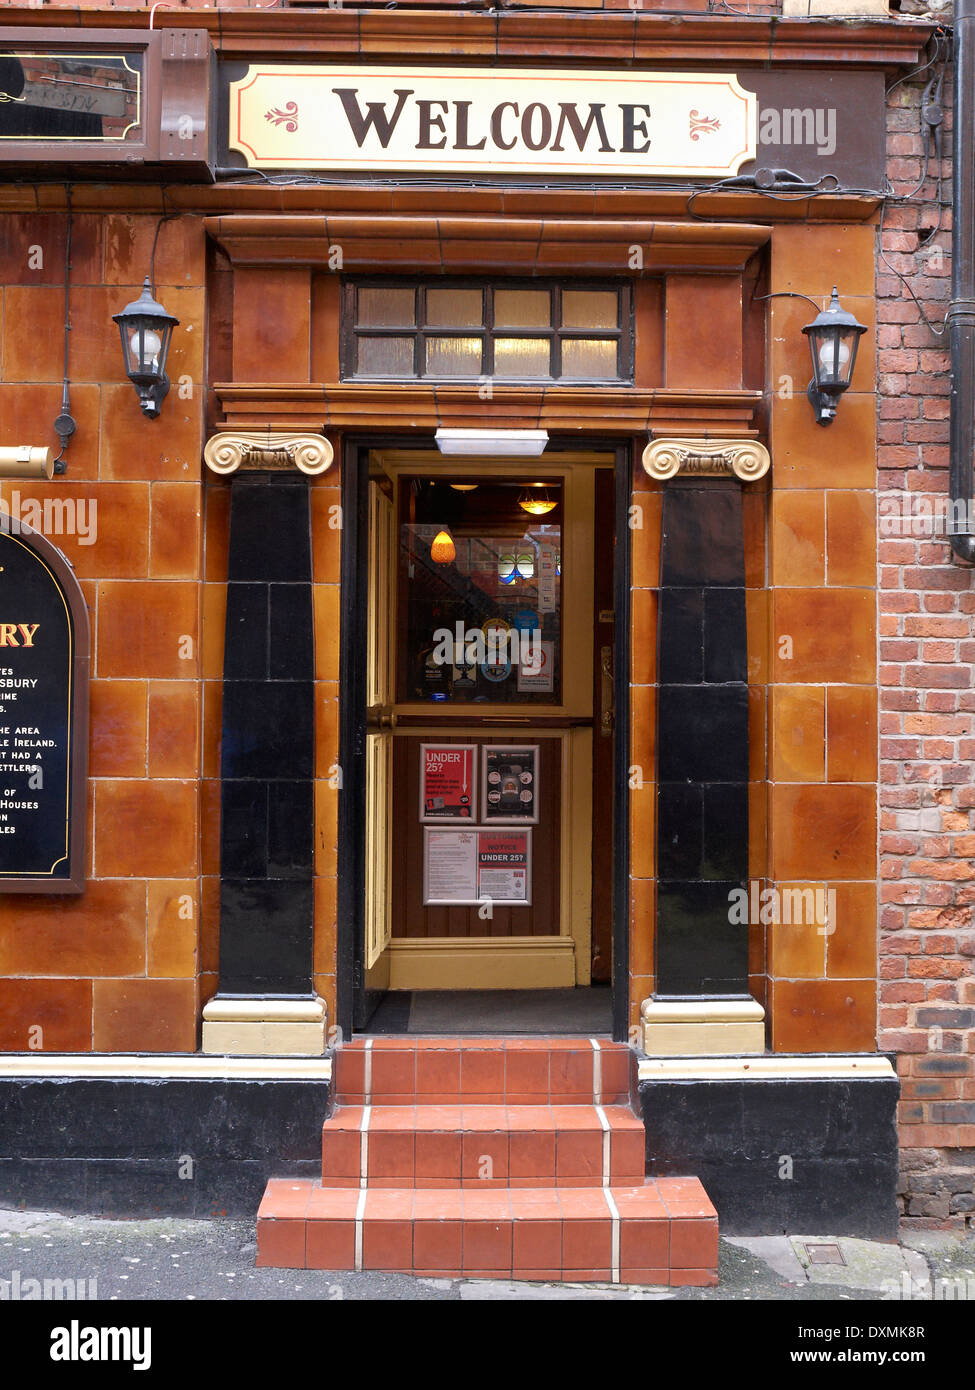 Altmodische Willkommensschild über Pub Eingang in Manchester UK Stockfoto